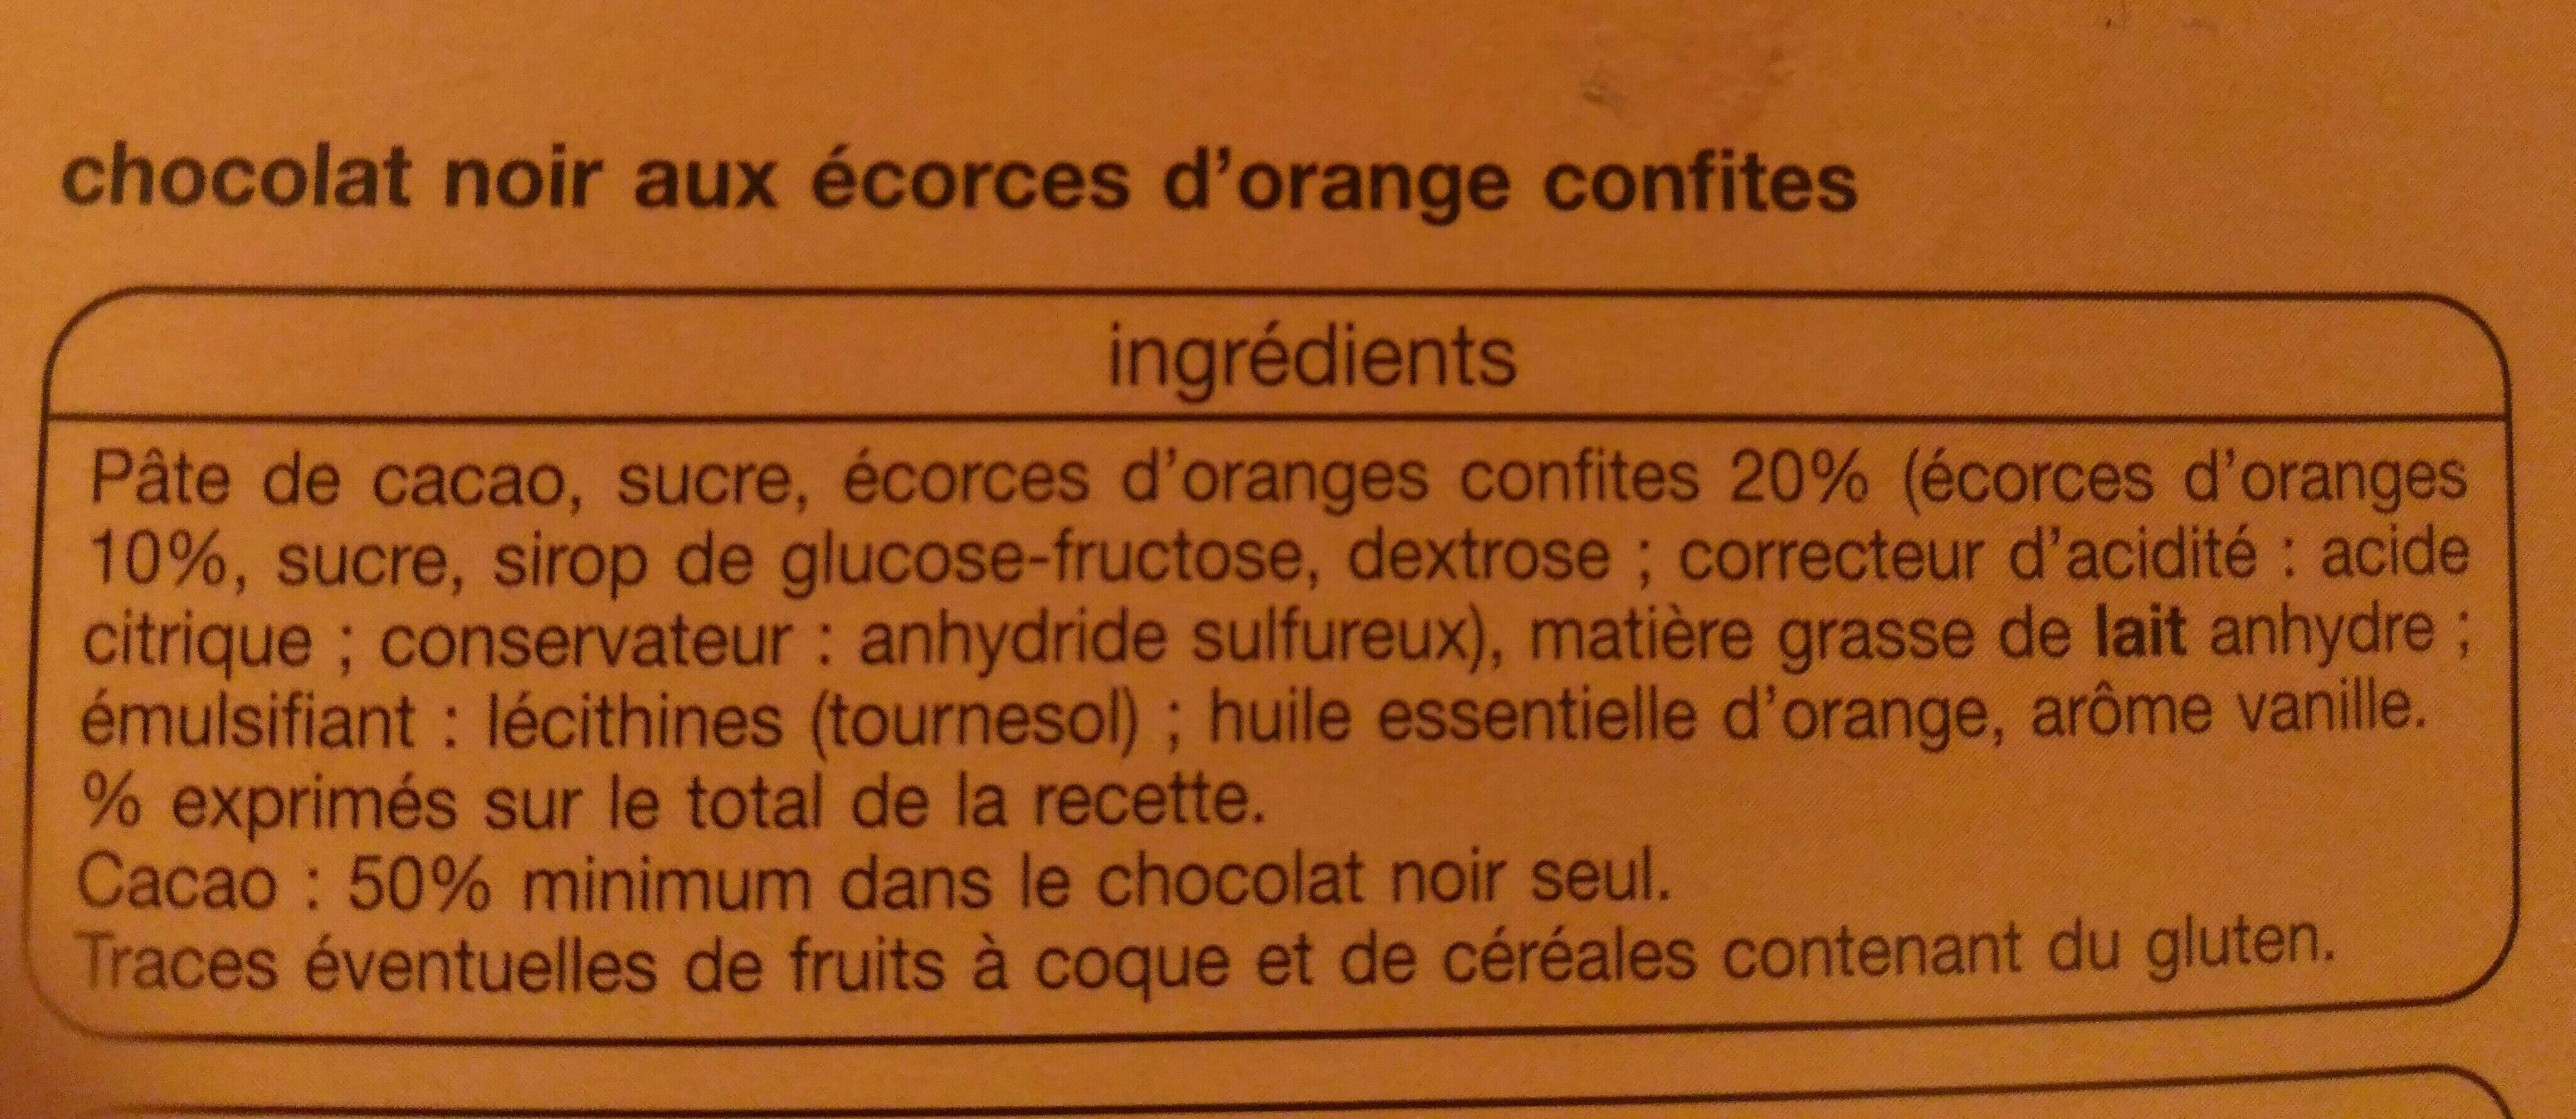 Chocolat noir aux écorces d'orange confites - Ingrédients